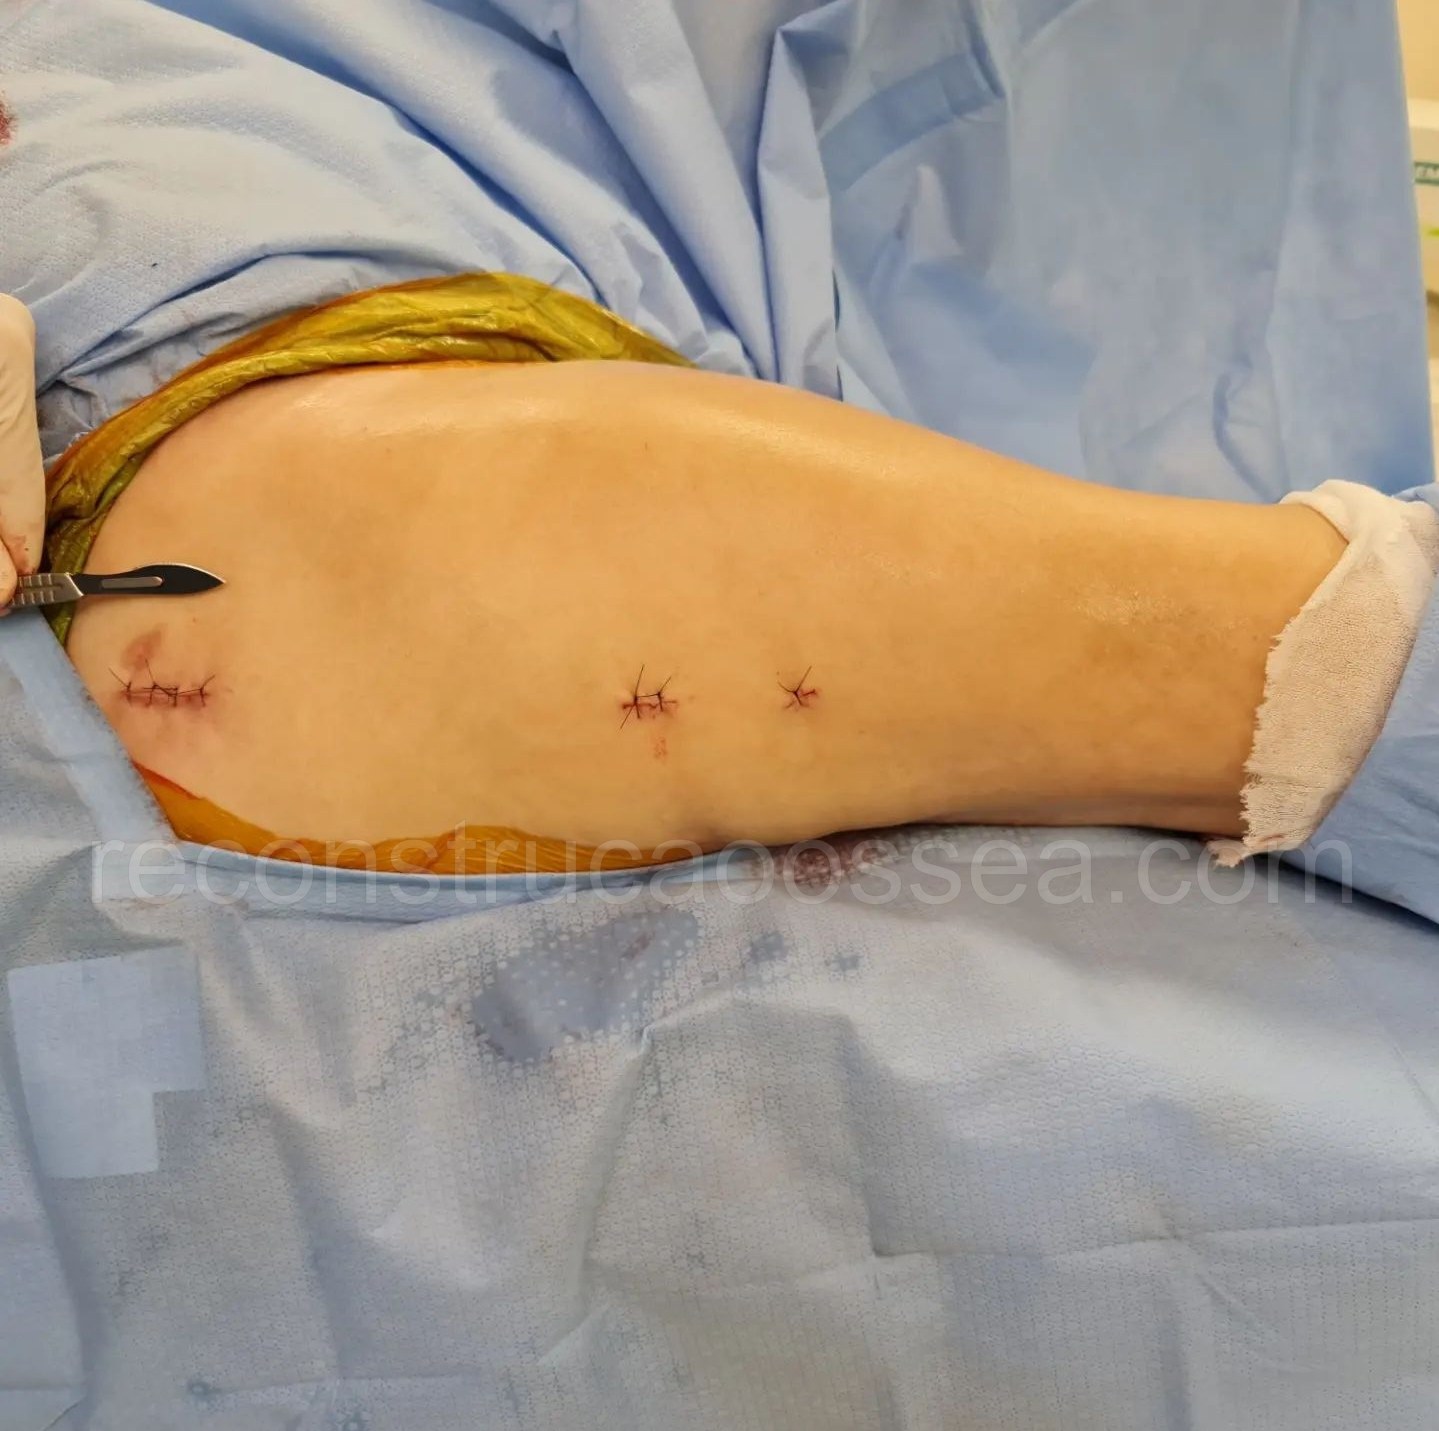 cirurgia-ortopedica-minimamente-invasiva-22